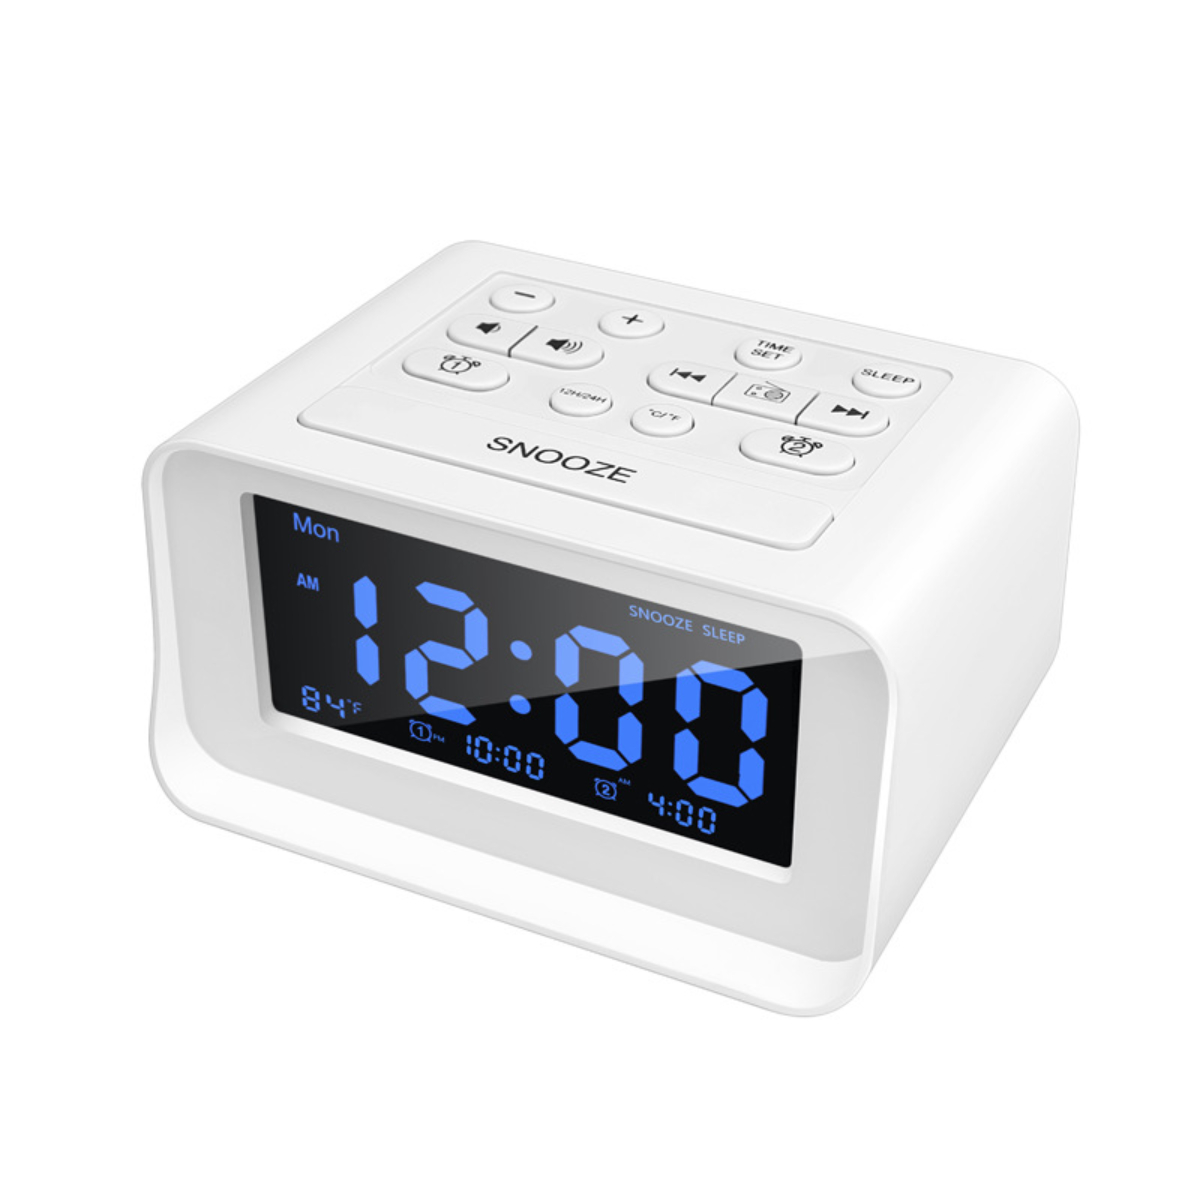 BYTELIKE LED-Digital-Schlafzimmerwecker-Radio mit USB-Ladeanschluss Alarm